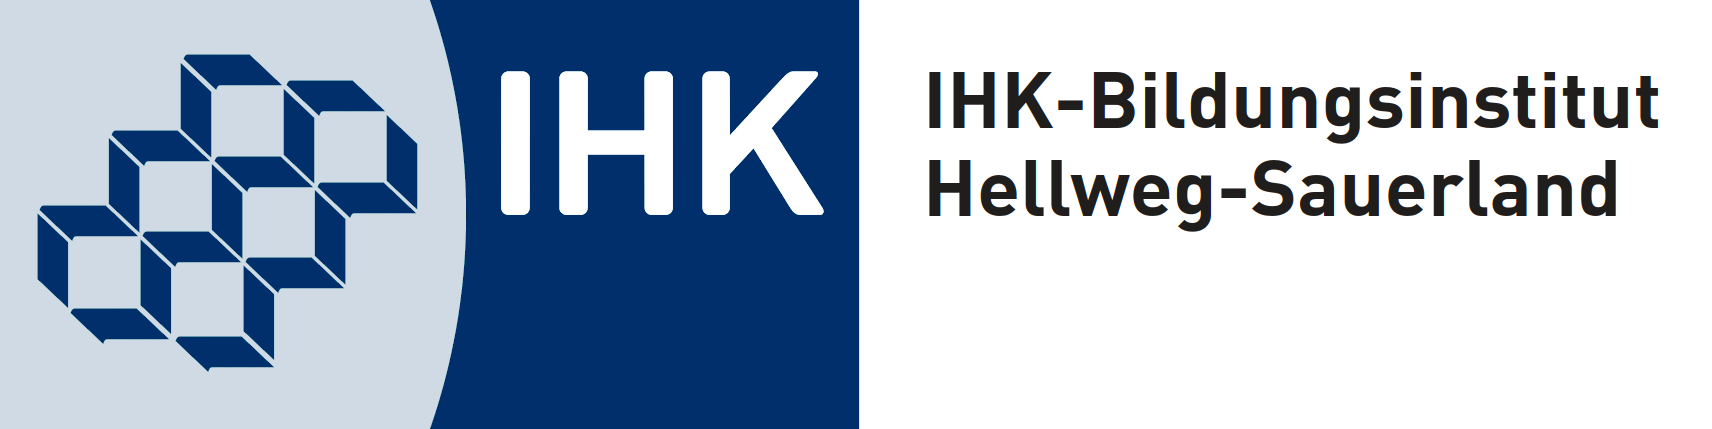 IHK-Bildungsinstitut